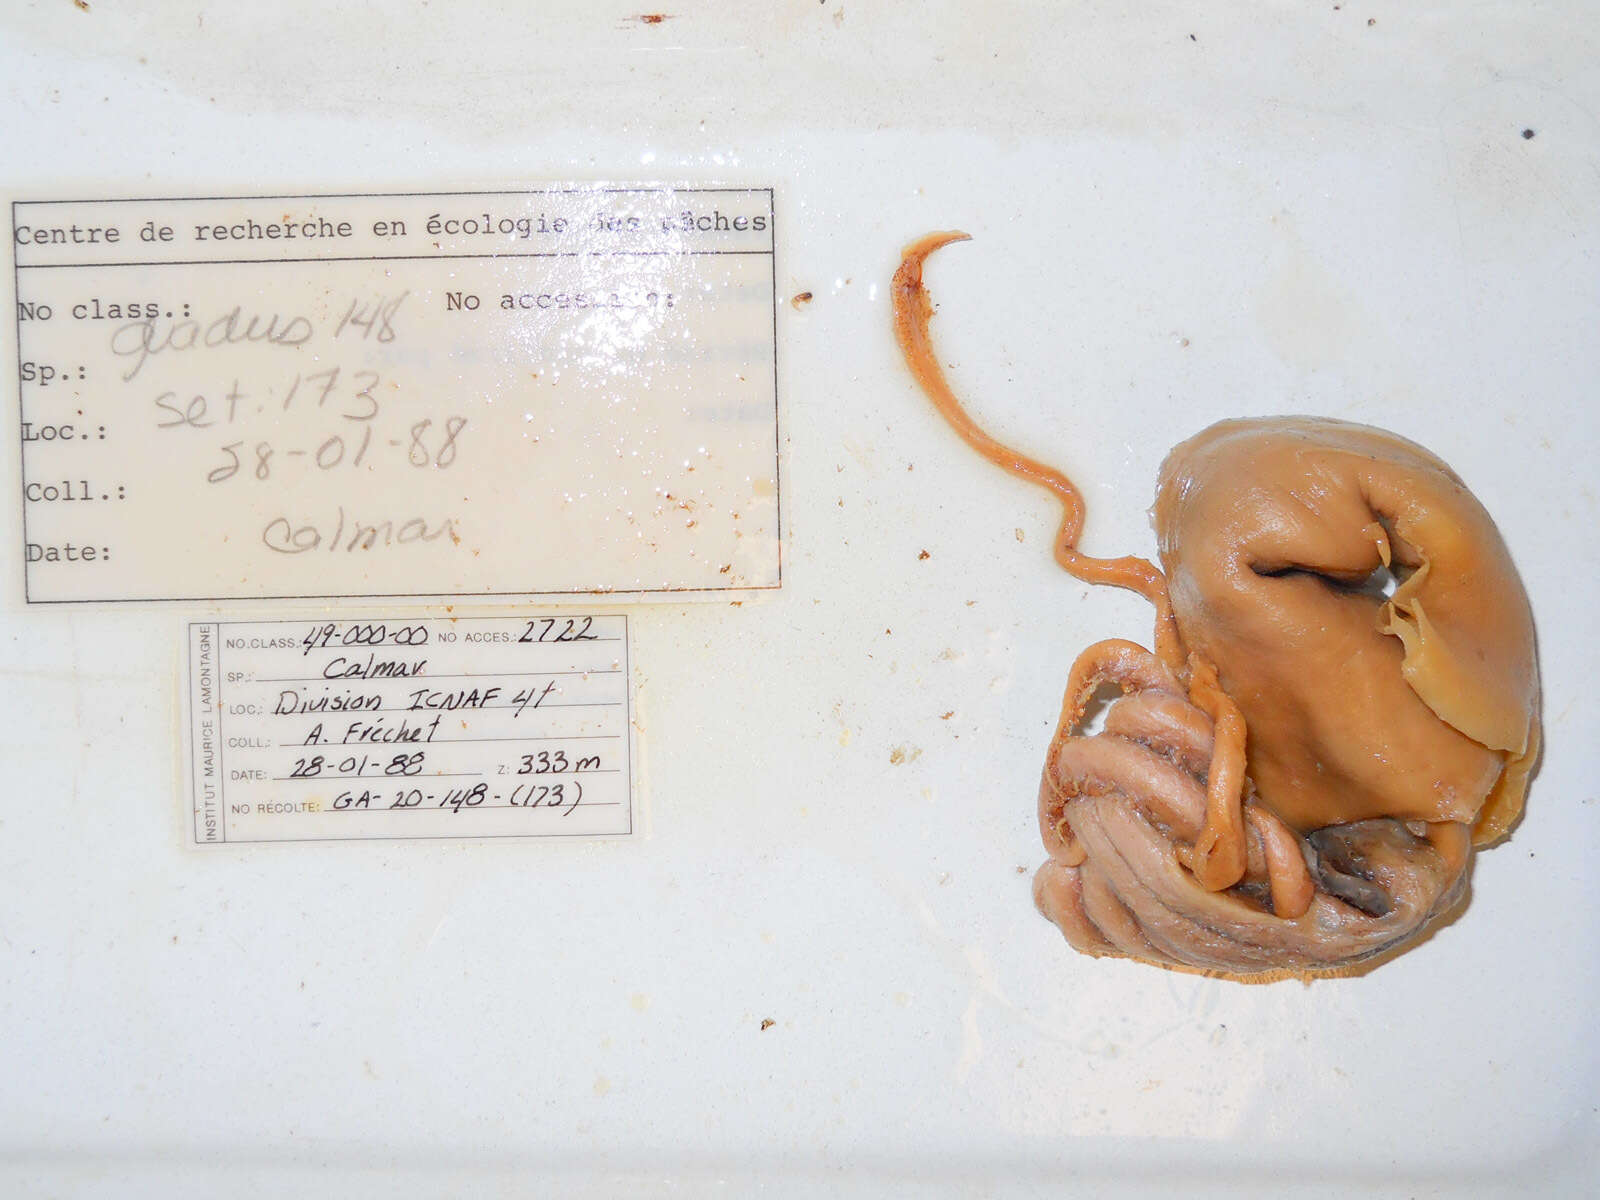 Image of Boreoatlantic armhook squid